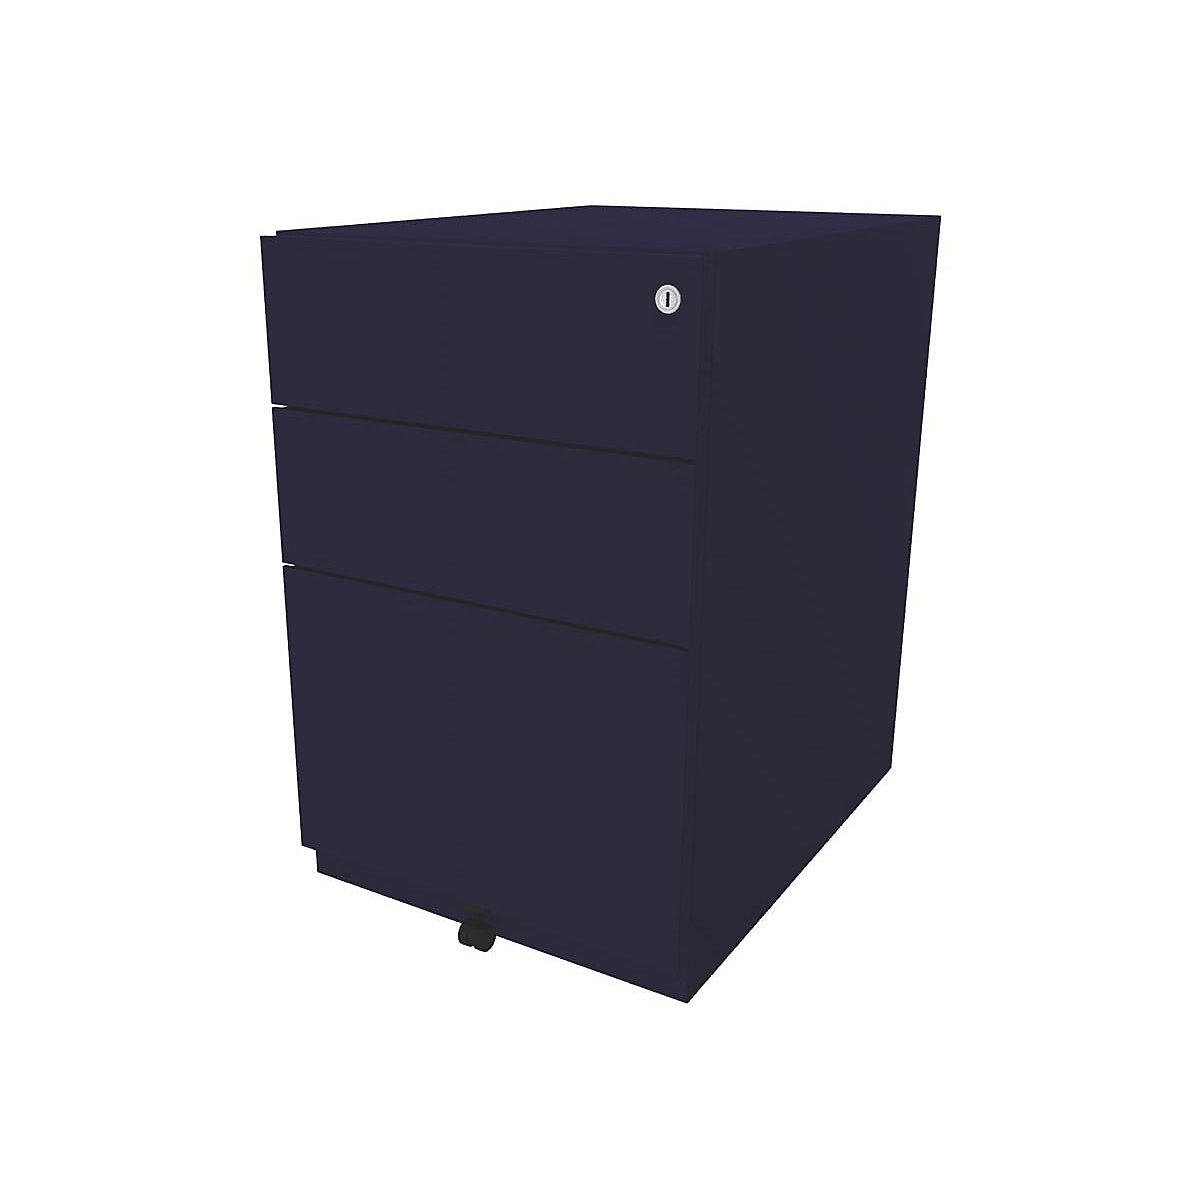 Pomični predalnik Note™, 2 univerzalna predala, 1 predal za obešalne mape – BISLEY, VxŠxG 645 x 420 x 565 mm, oxfordsko modre barve-7